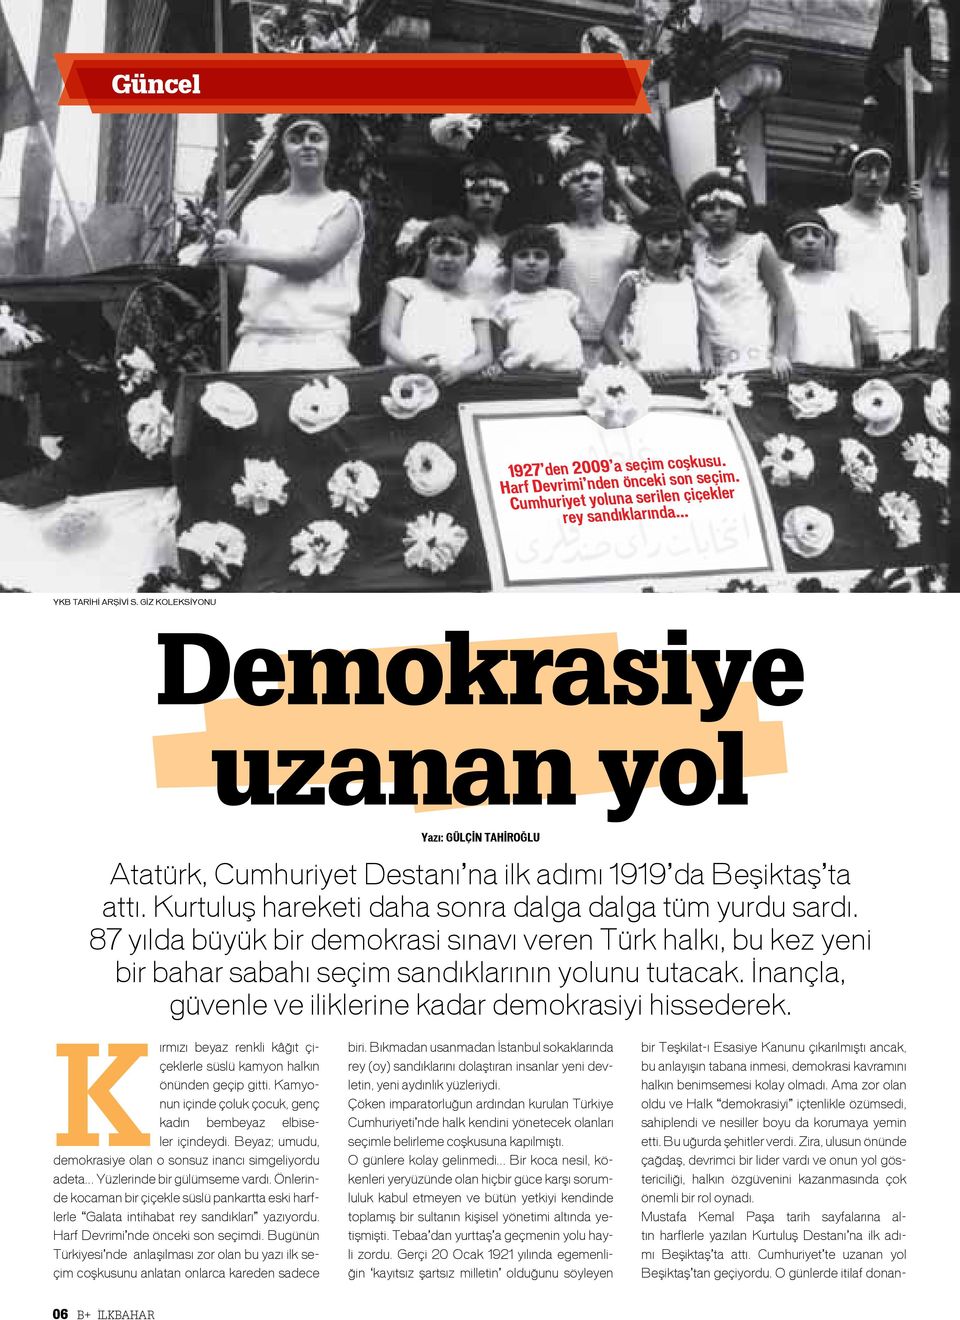 87 yılda büyük bir demokrasi sınavı veren Türk halkı, bu kez yeni bir bahar sabahı seçim sandıklarının yolunu tutacak. İnançla, güvenle ve iliklerine kadar demokrasiyi hissederek.